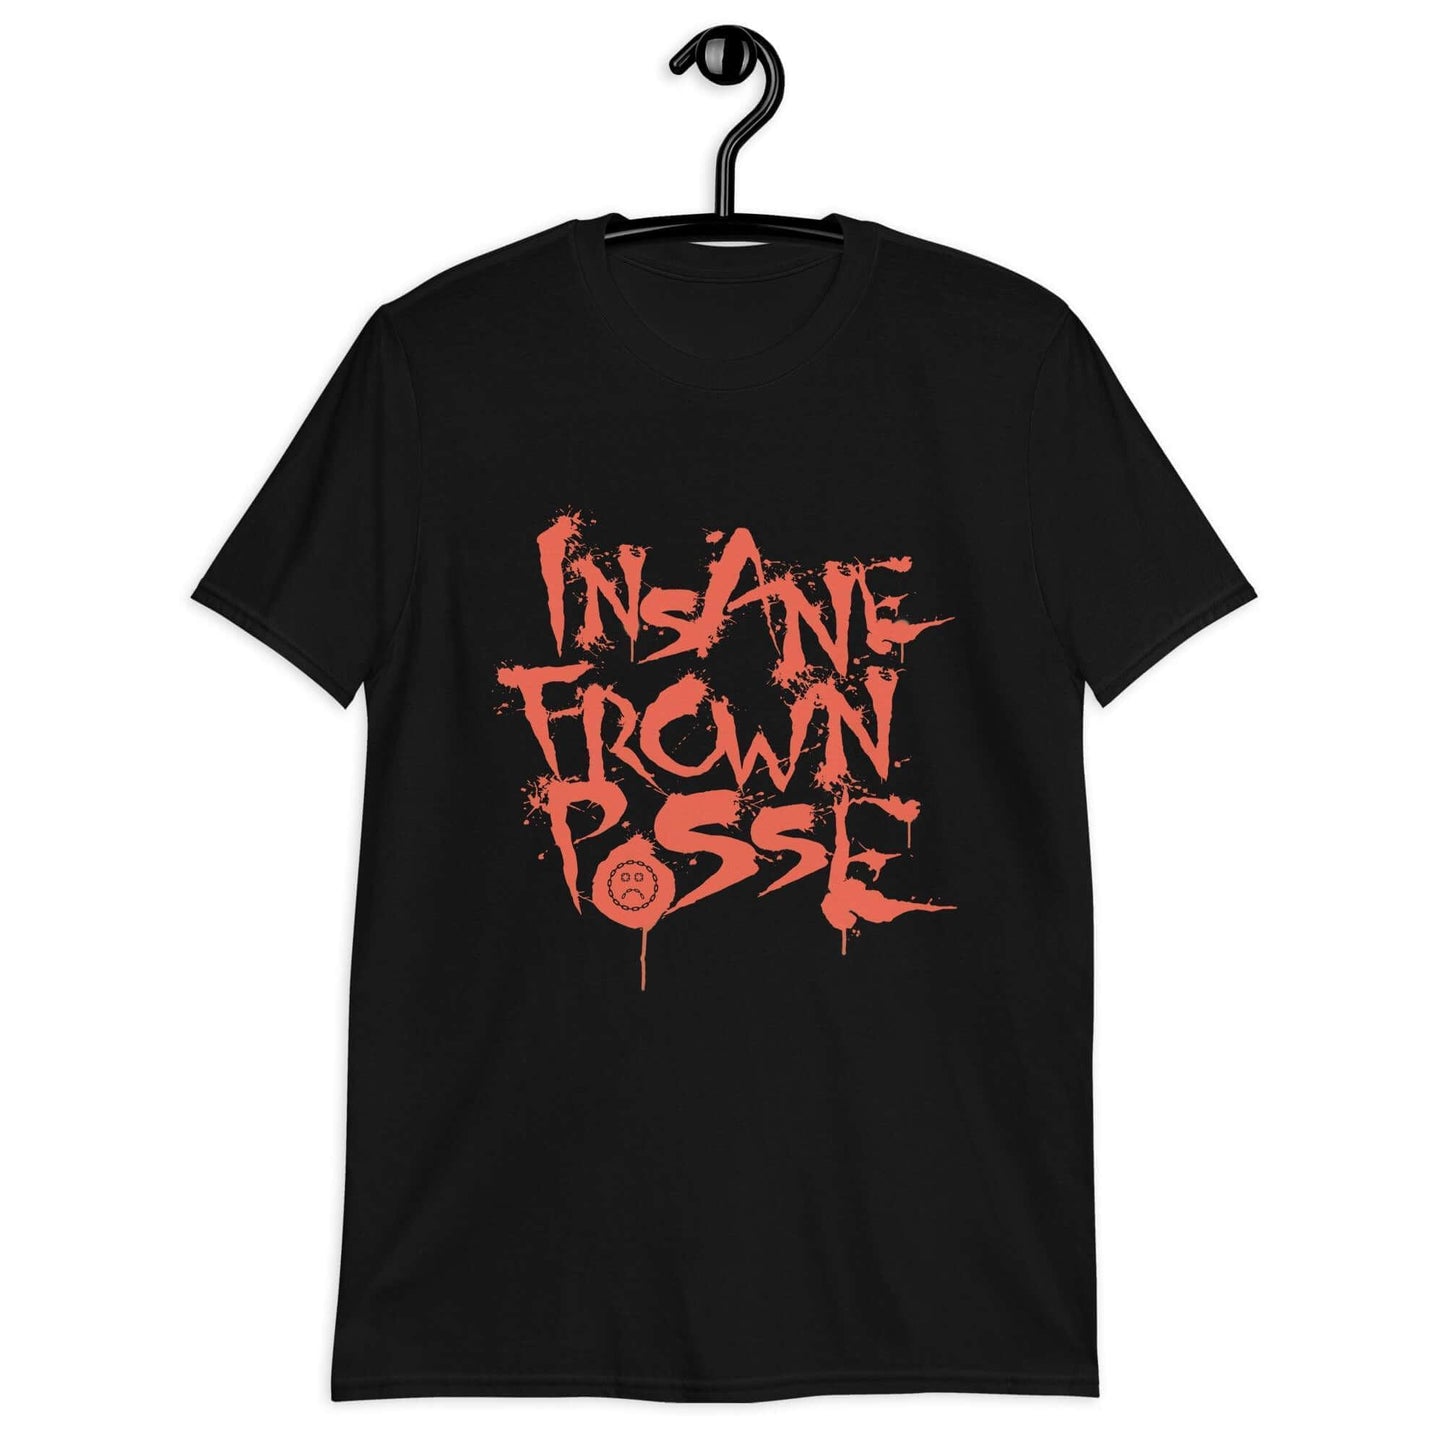 Insane Frown Posse Unisex T-Shirt